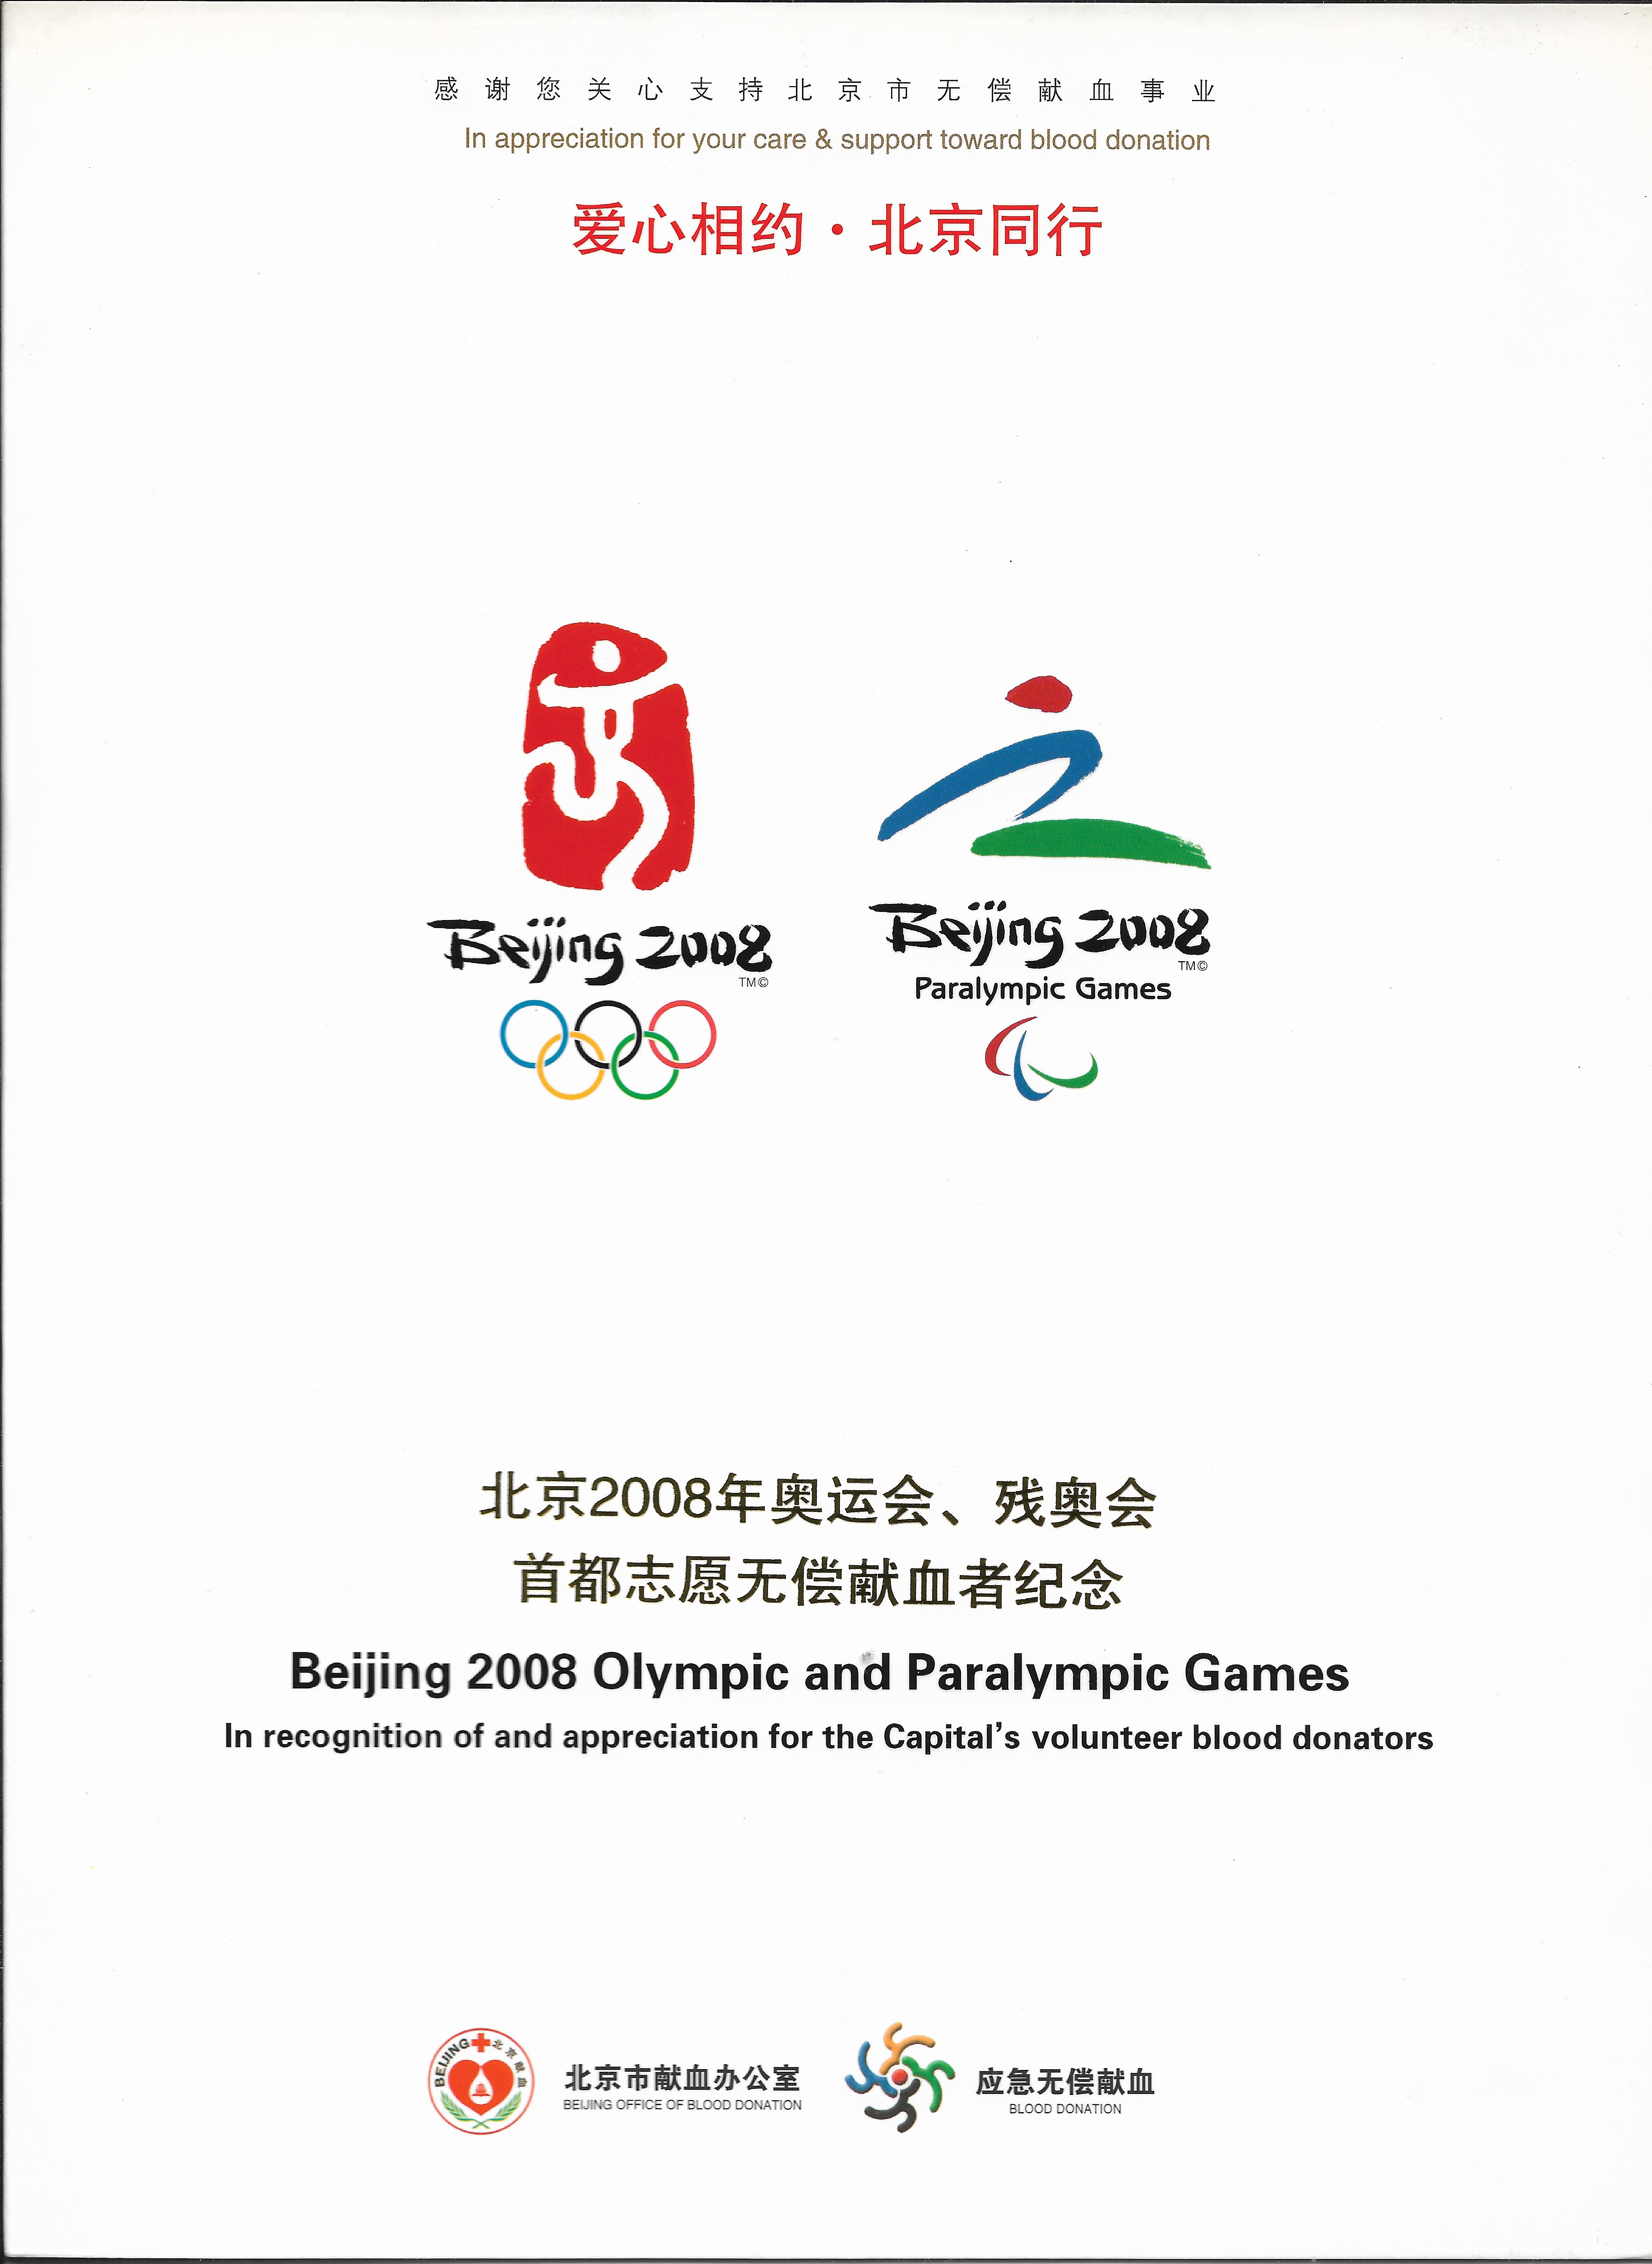 08年奥运会会徽图片